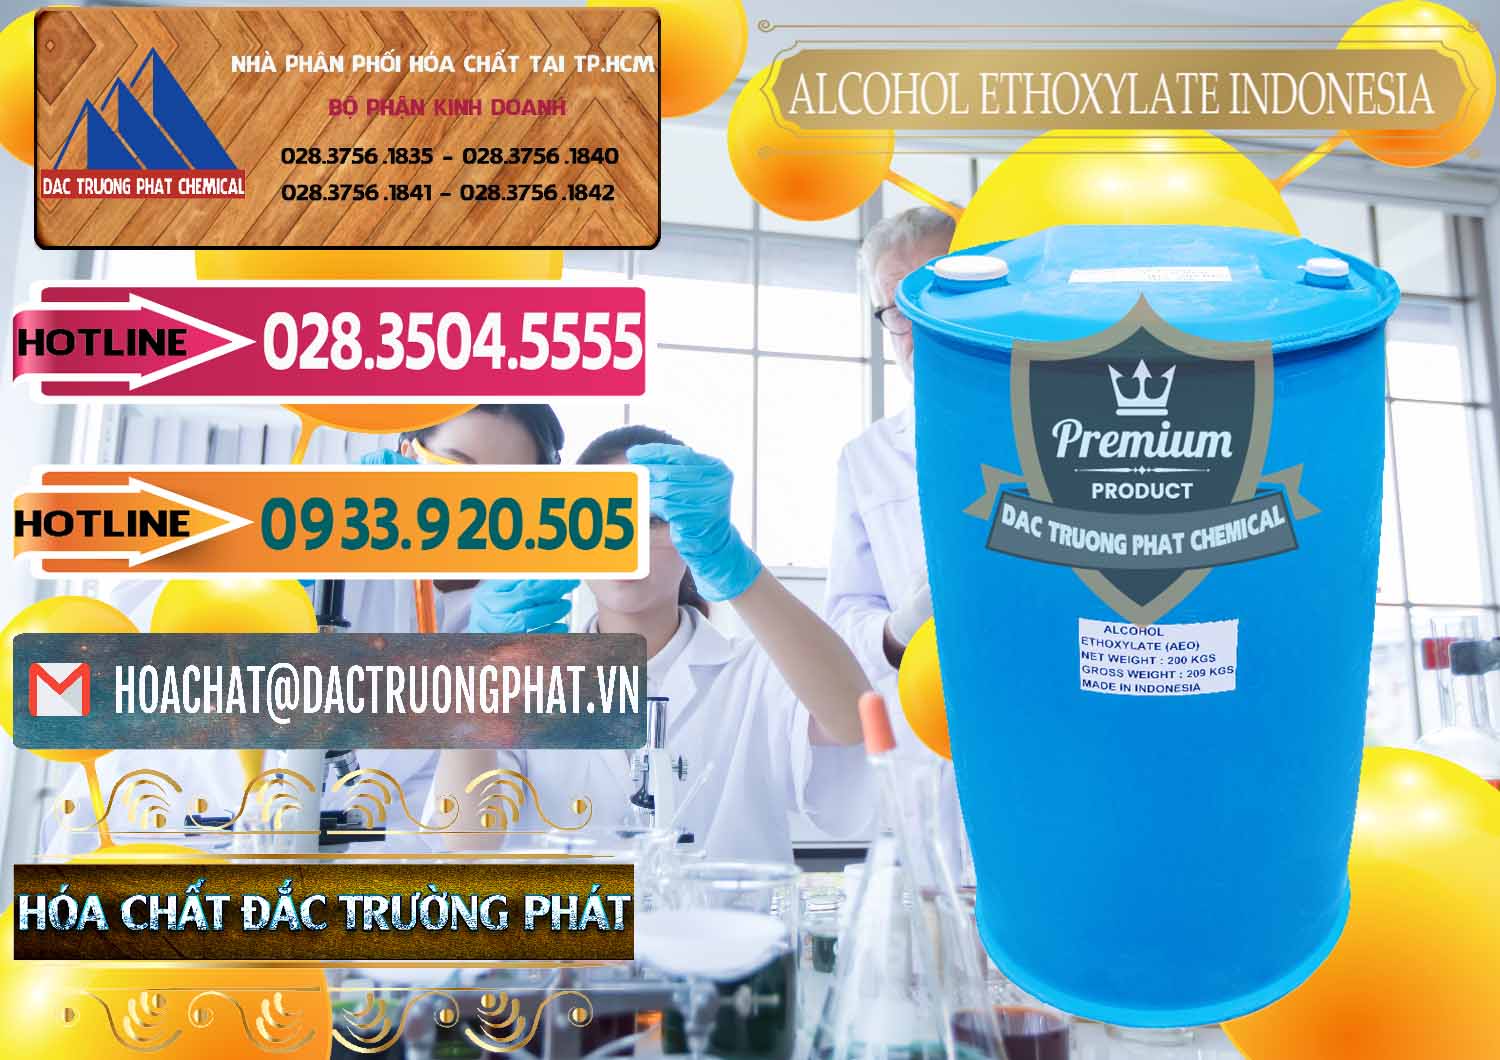 Nơi kinh doanh và bán Alcohol Ethoxylate Indonesia - 0308 - Công ty kinh doanh và cung cấp hóa chất tại TP.HCM - dactruongphat.vn